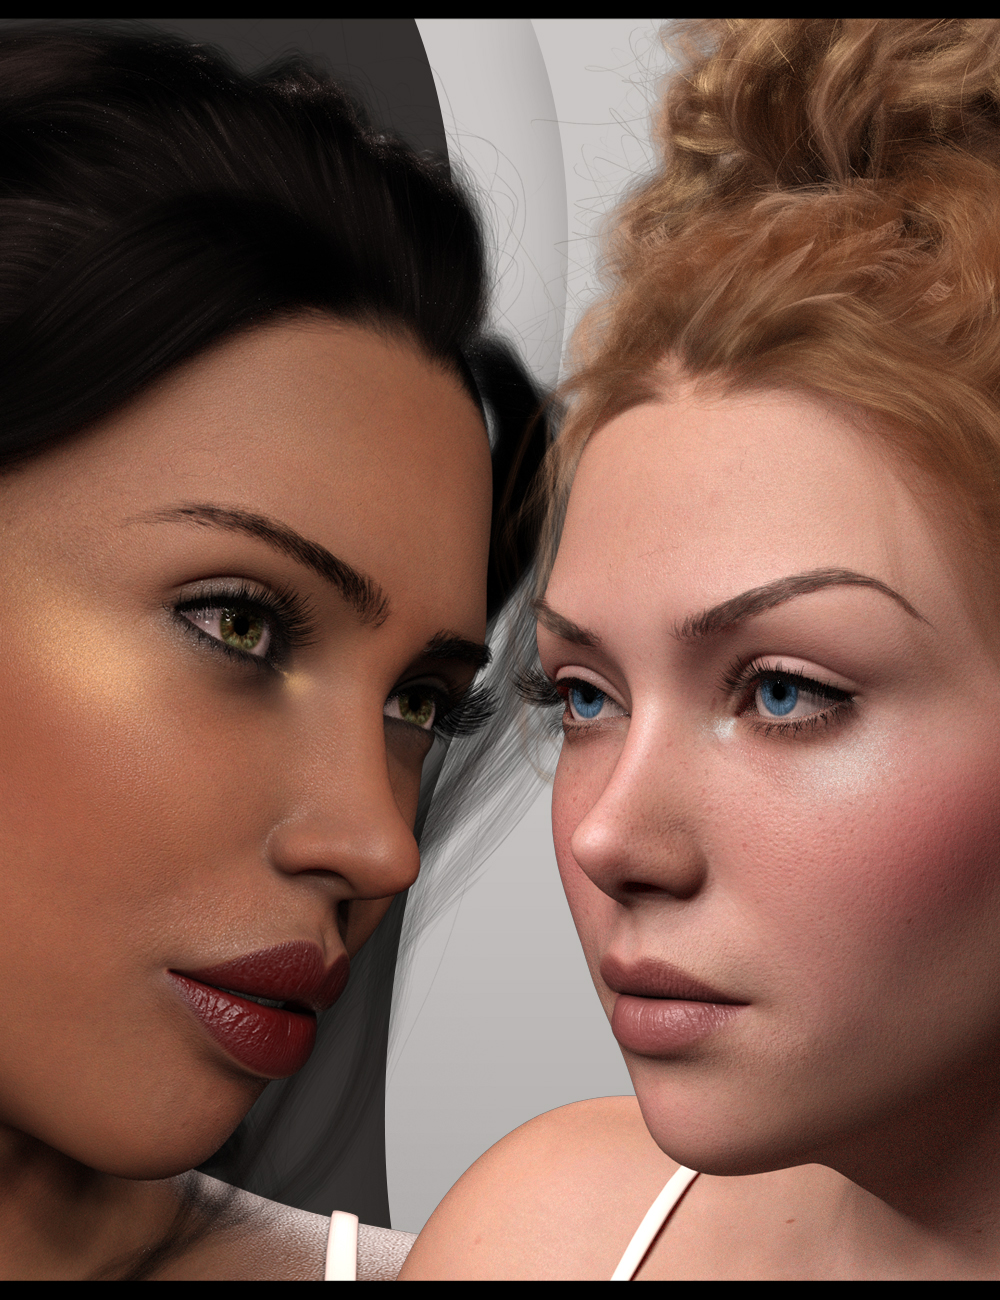 Twizted Face MakeUp MR for Genesis 9 by: TwiztedMetal, 3D Models by Daz 3D